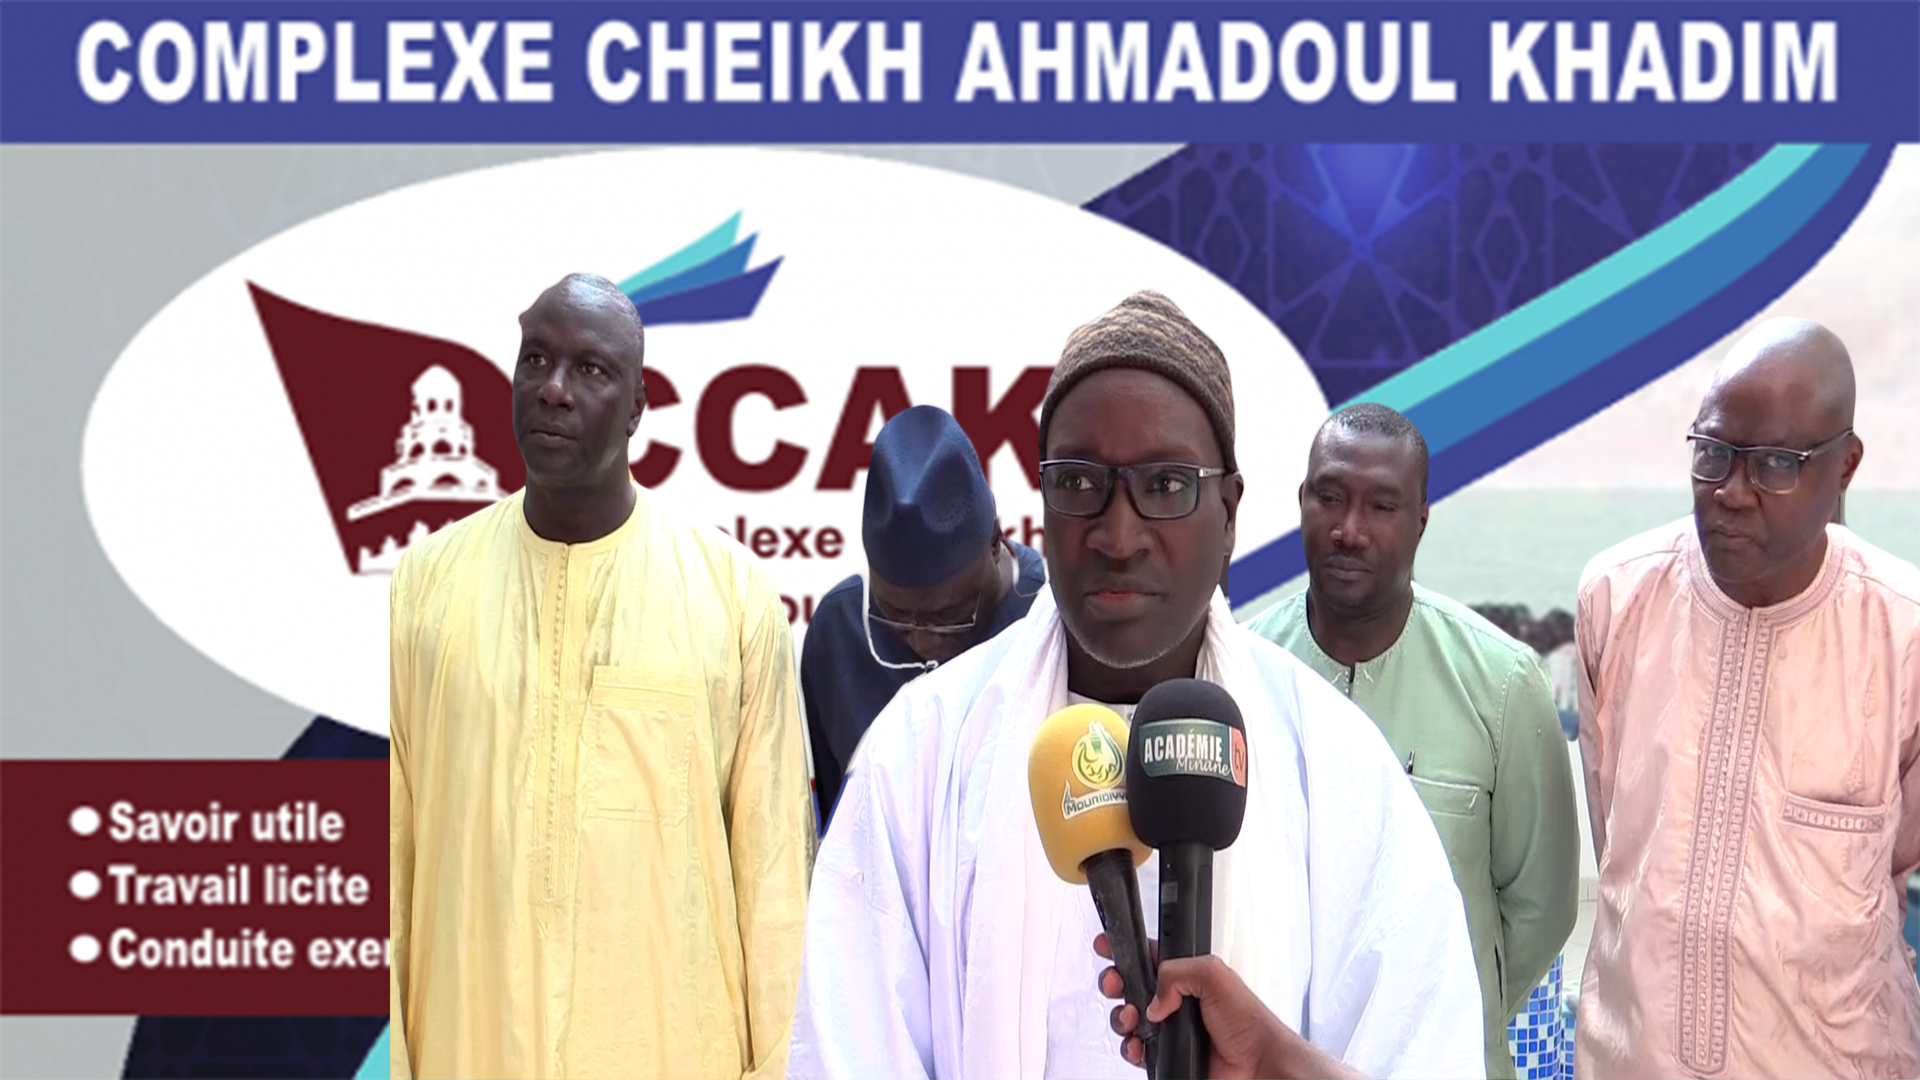 Complexe Cheikh Ahmadoul khadim : Réunion de coordination du comité scientifique sur la santé